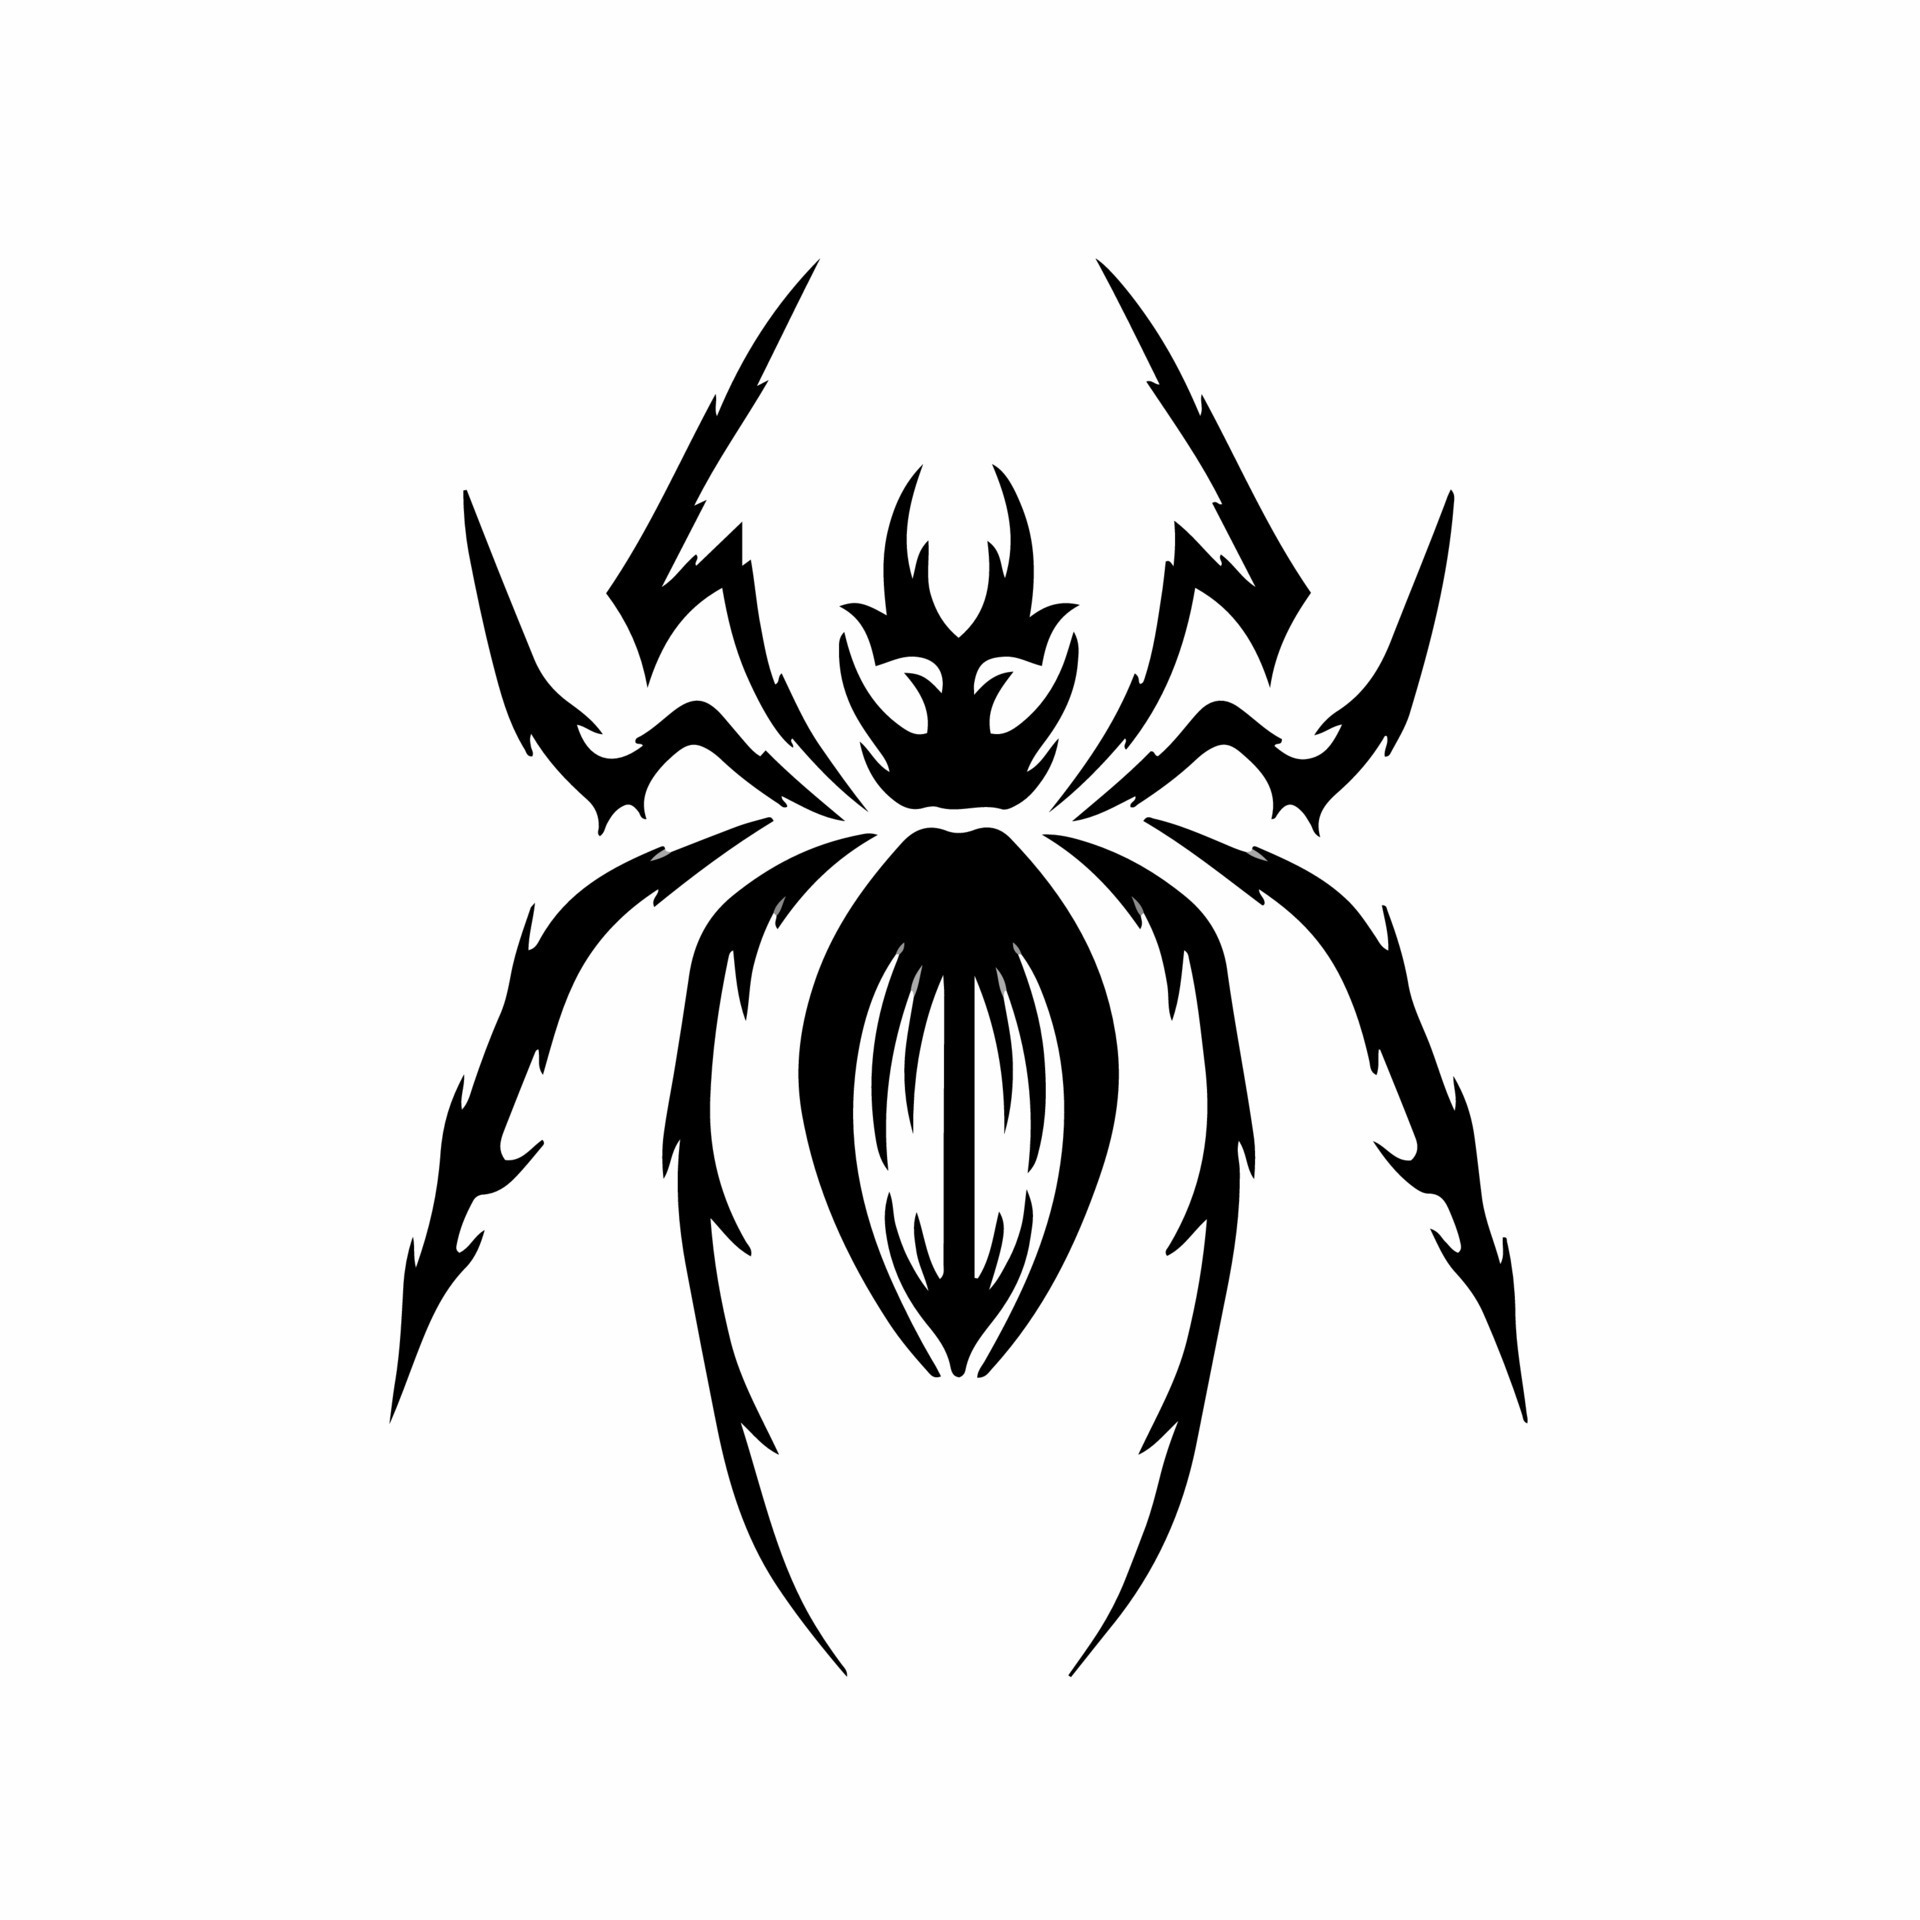 Spider by tattooflash on DeviantArt